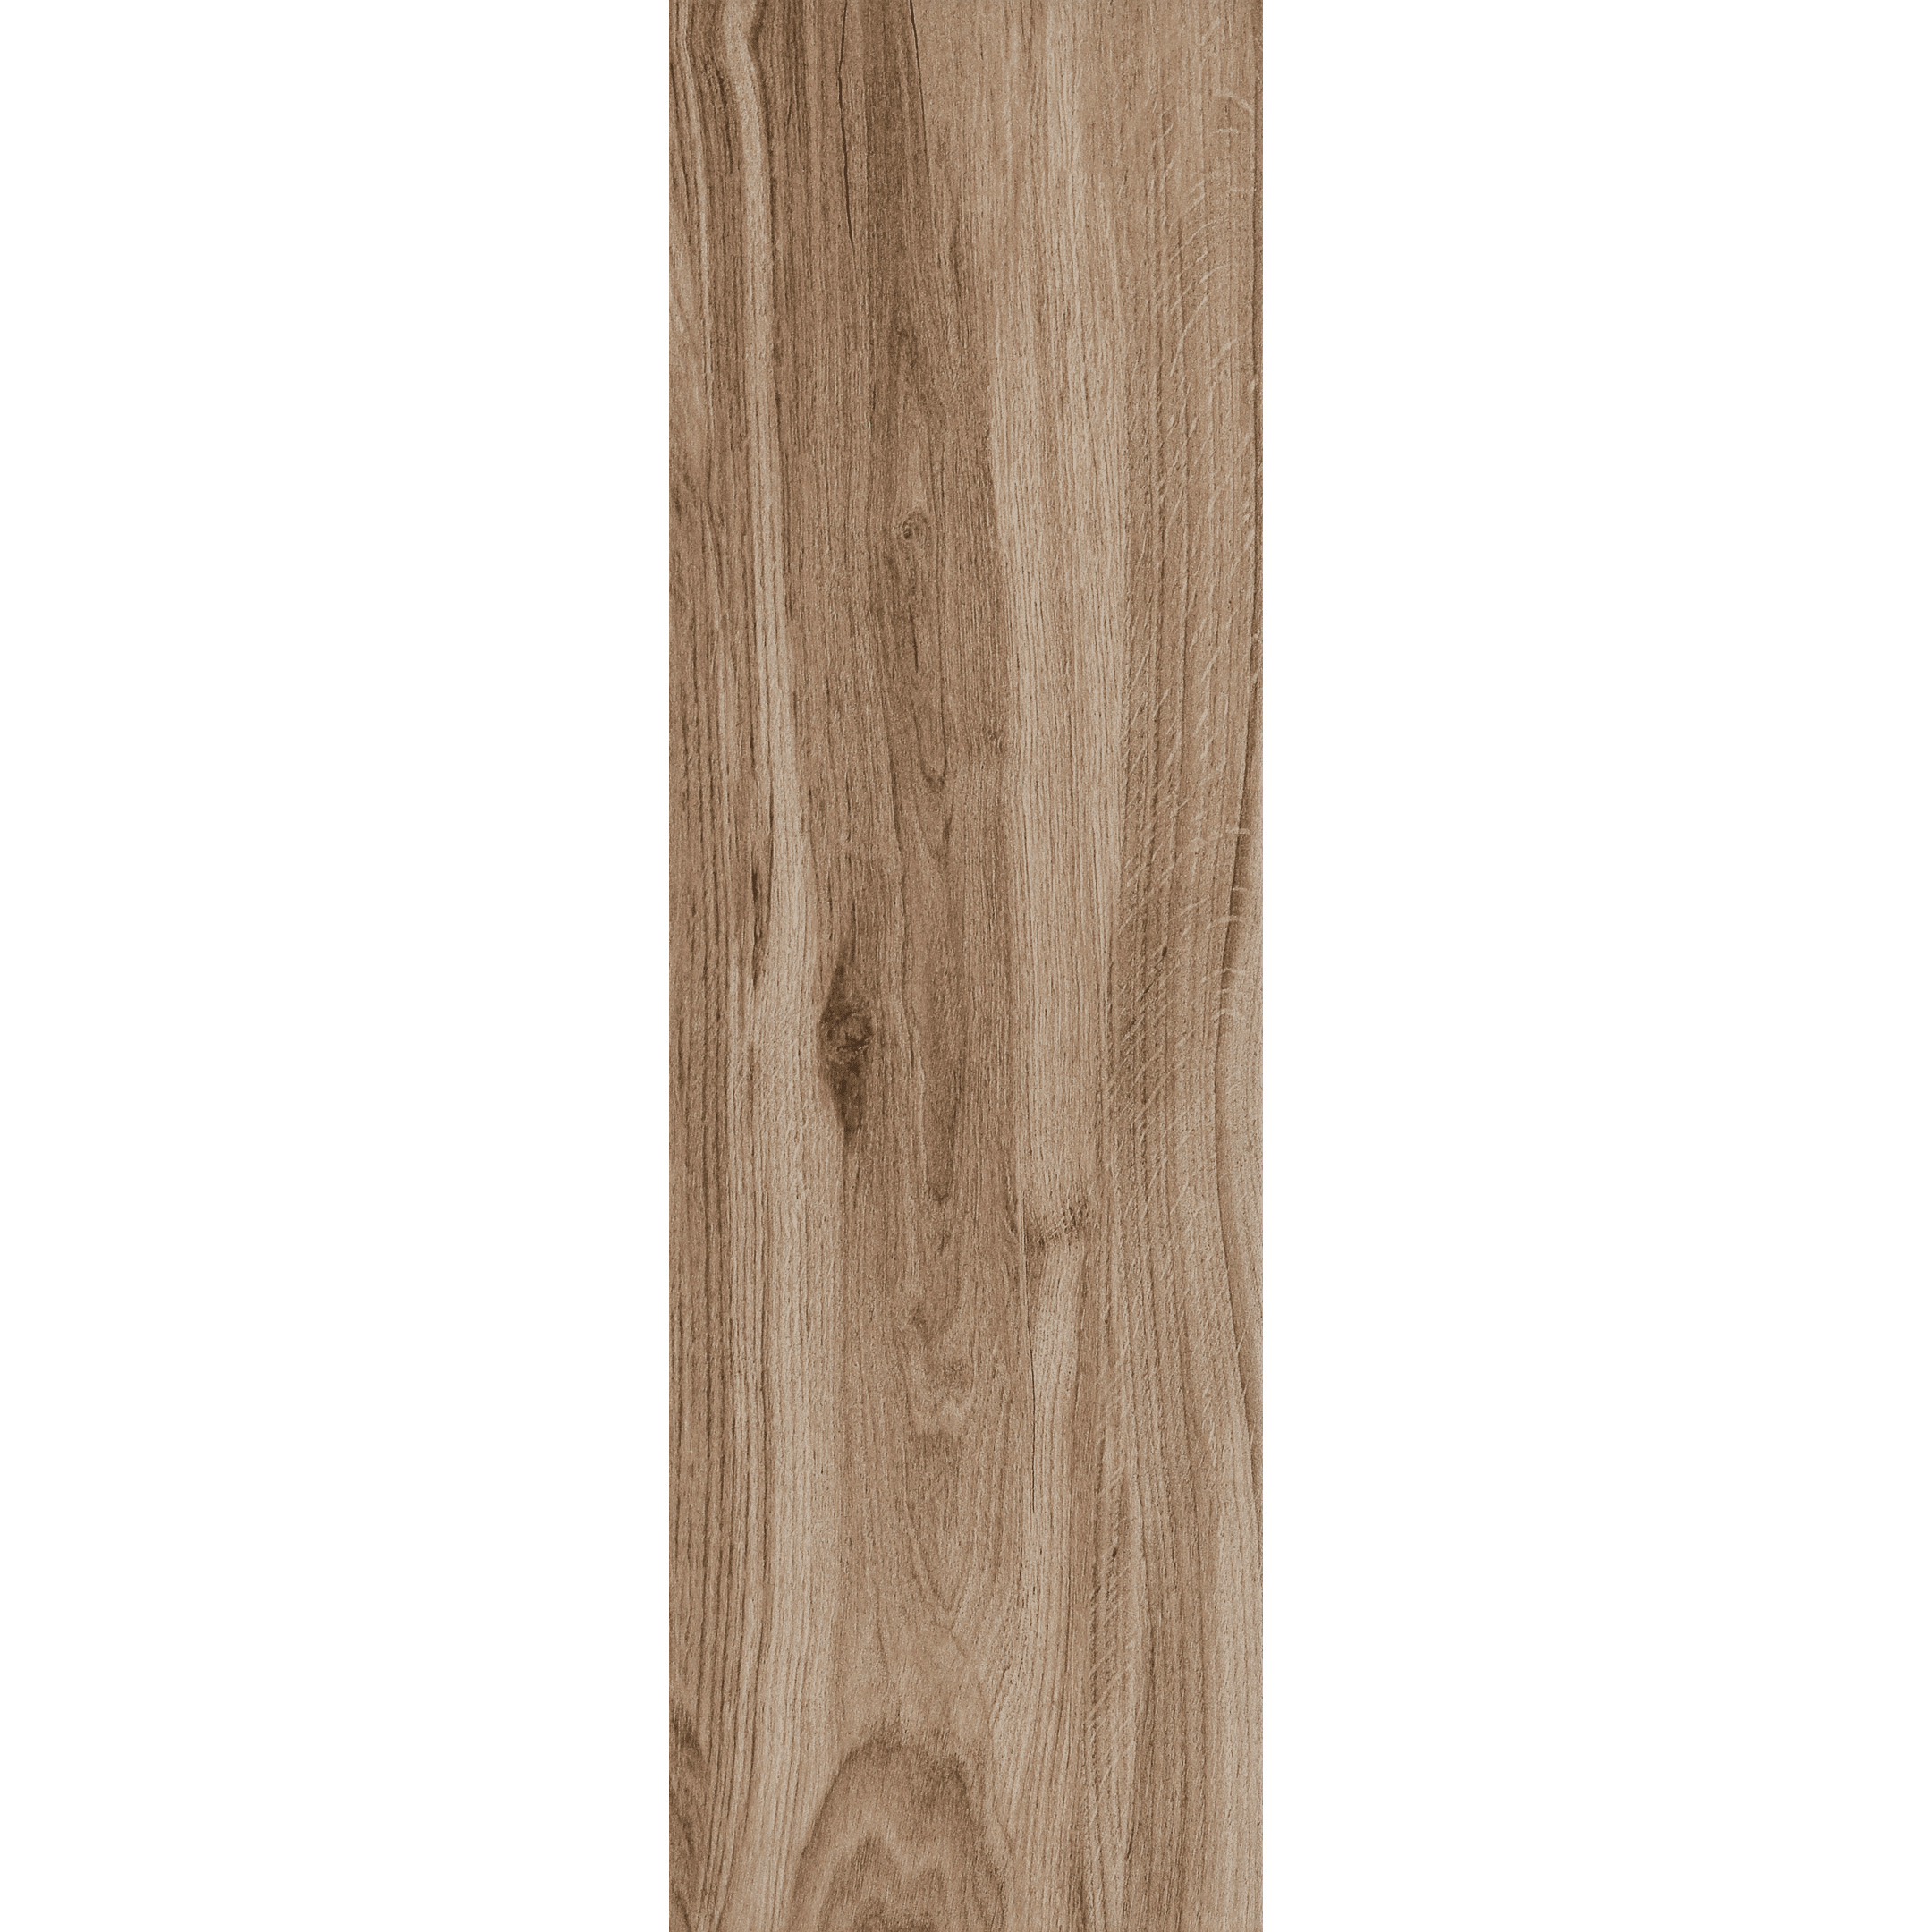 фото Керамогранит cersanit maplewood коричневый матовый 598х185х7,5 мм (11 шт.=1,216 кв.м)